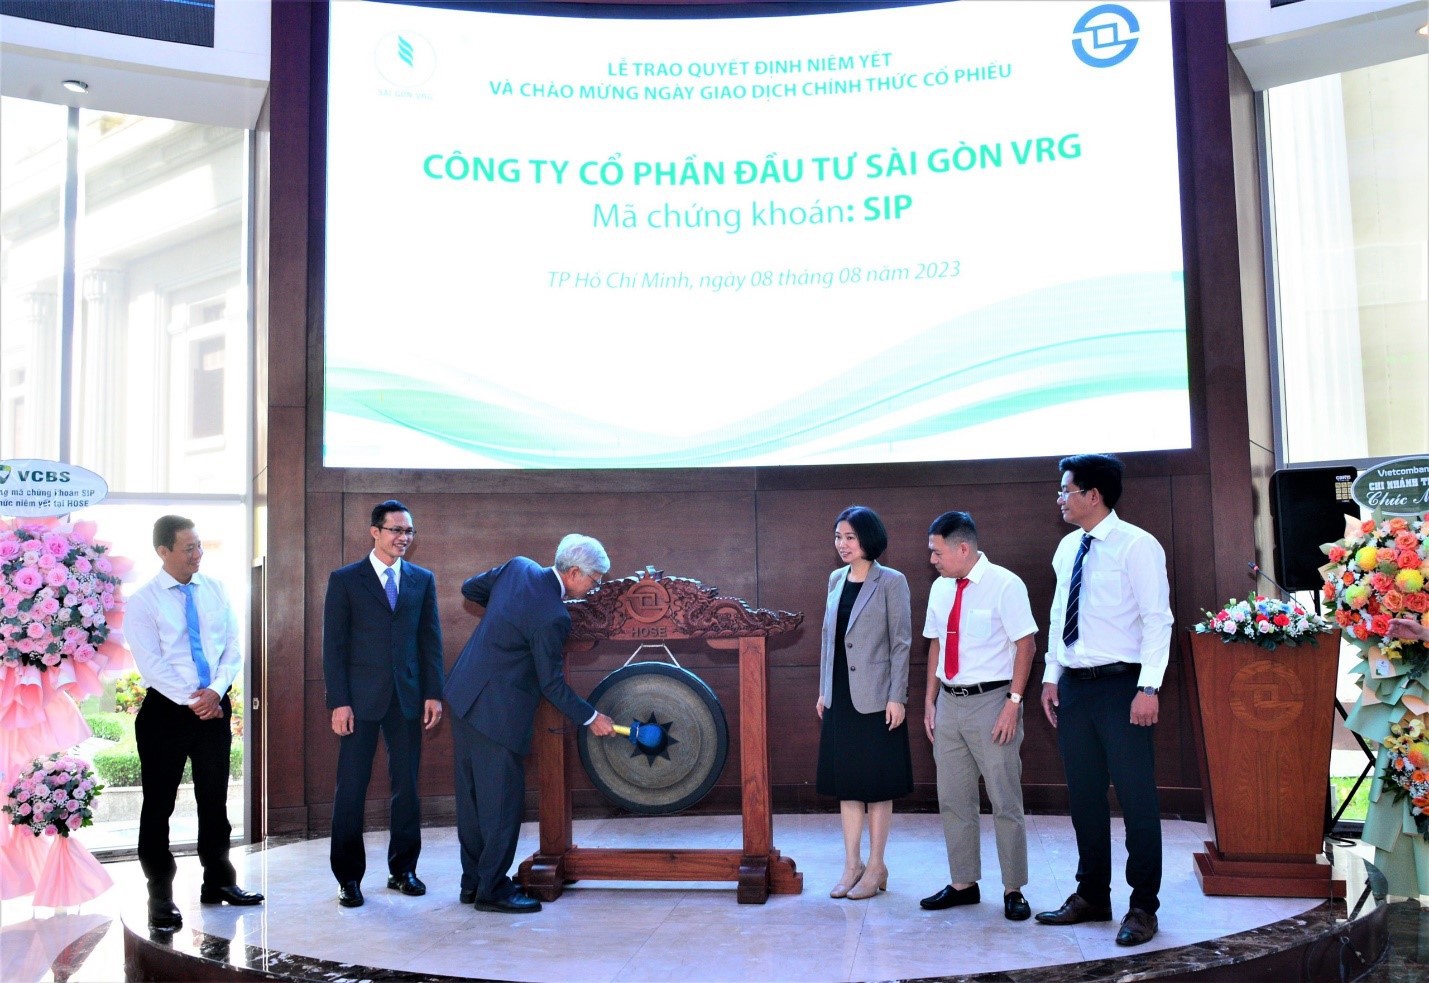 Lễ trao quyết định niêm yết và đưa hơn 90 triệu cổ phiếu của Công ty Cổ phần Đầu tư Sài Gòn VRG lên giao dịch trên sàn chứng khoán.